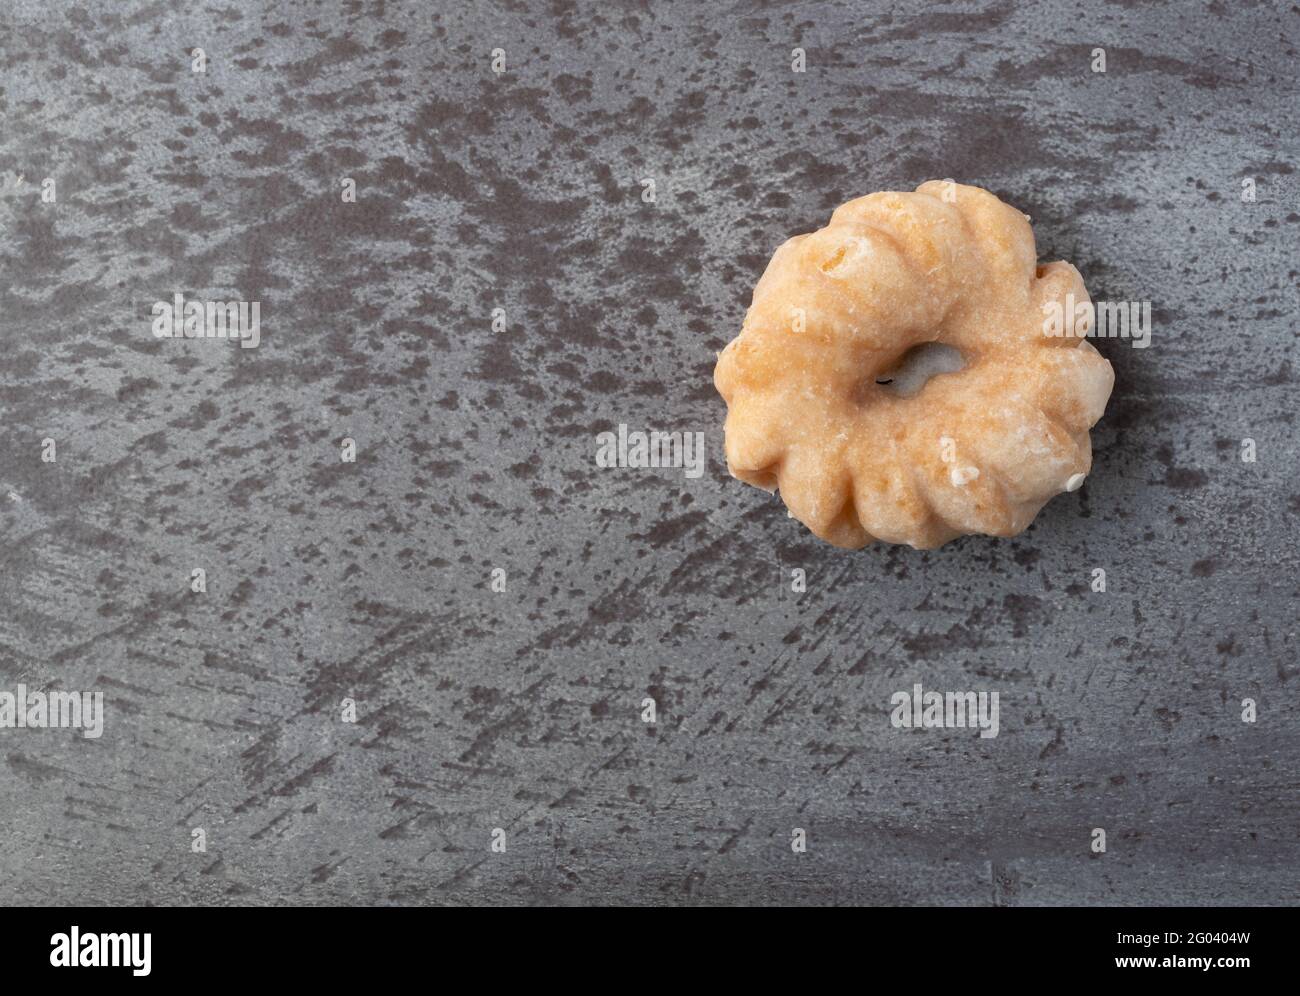 Vue de dessus d'un donut en forme de creur sur un fond gris tacheté. Banque D'Images